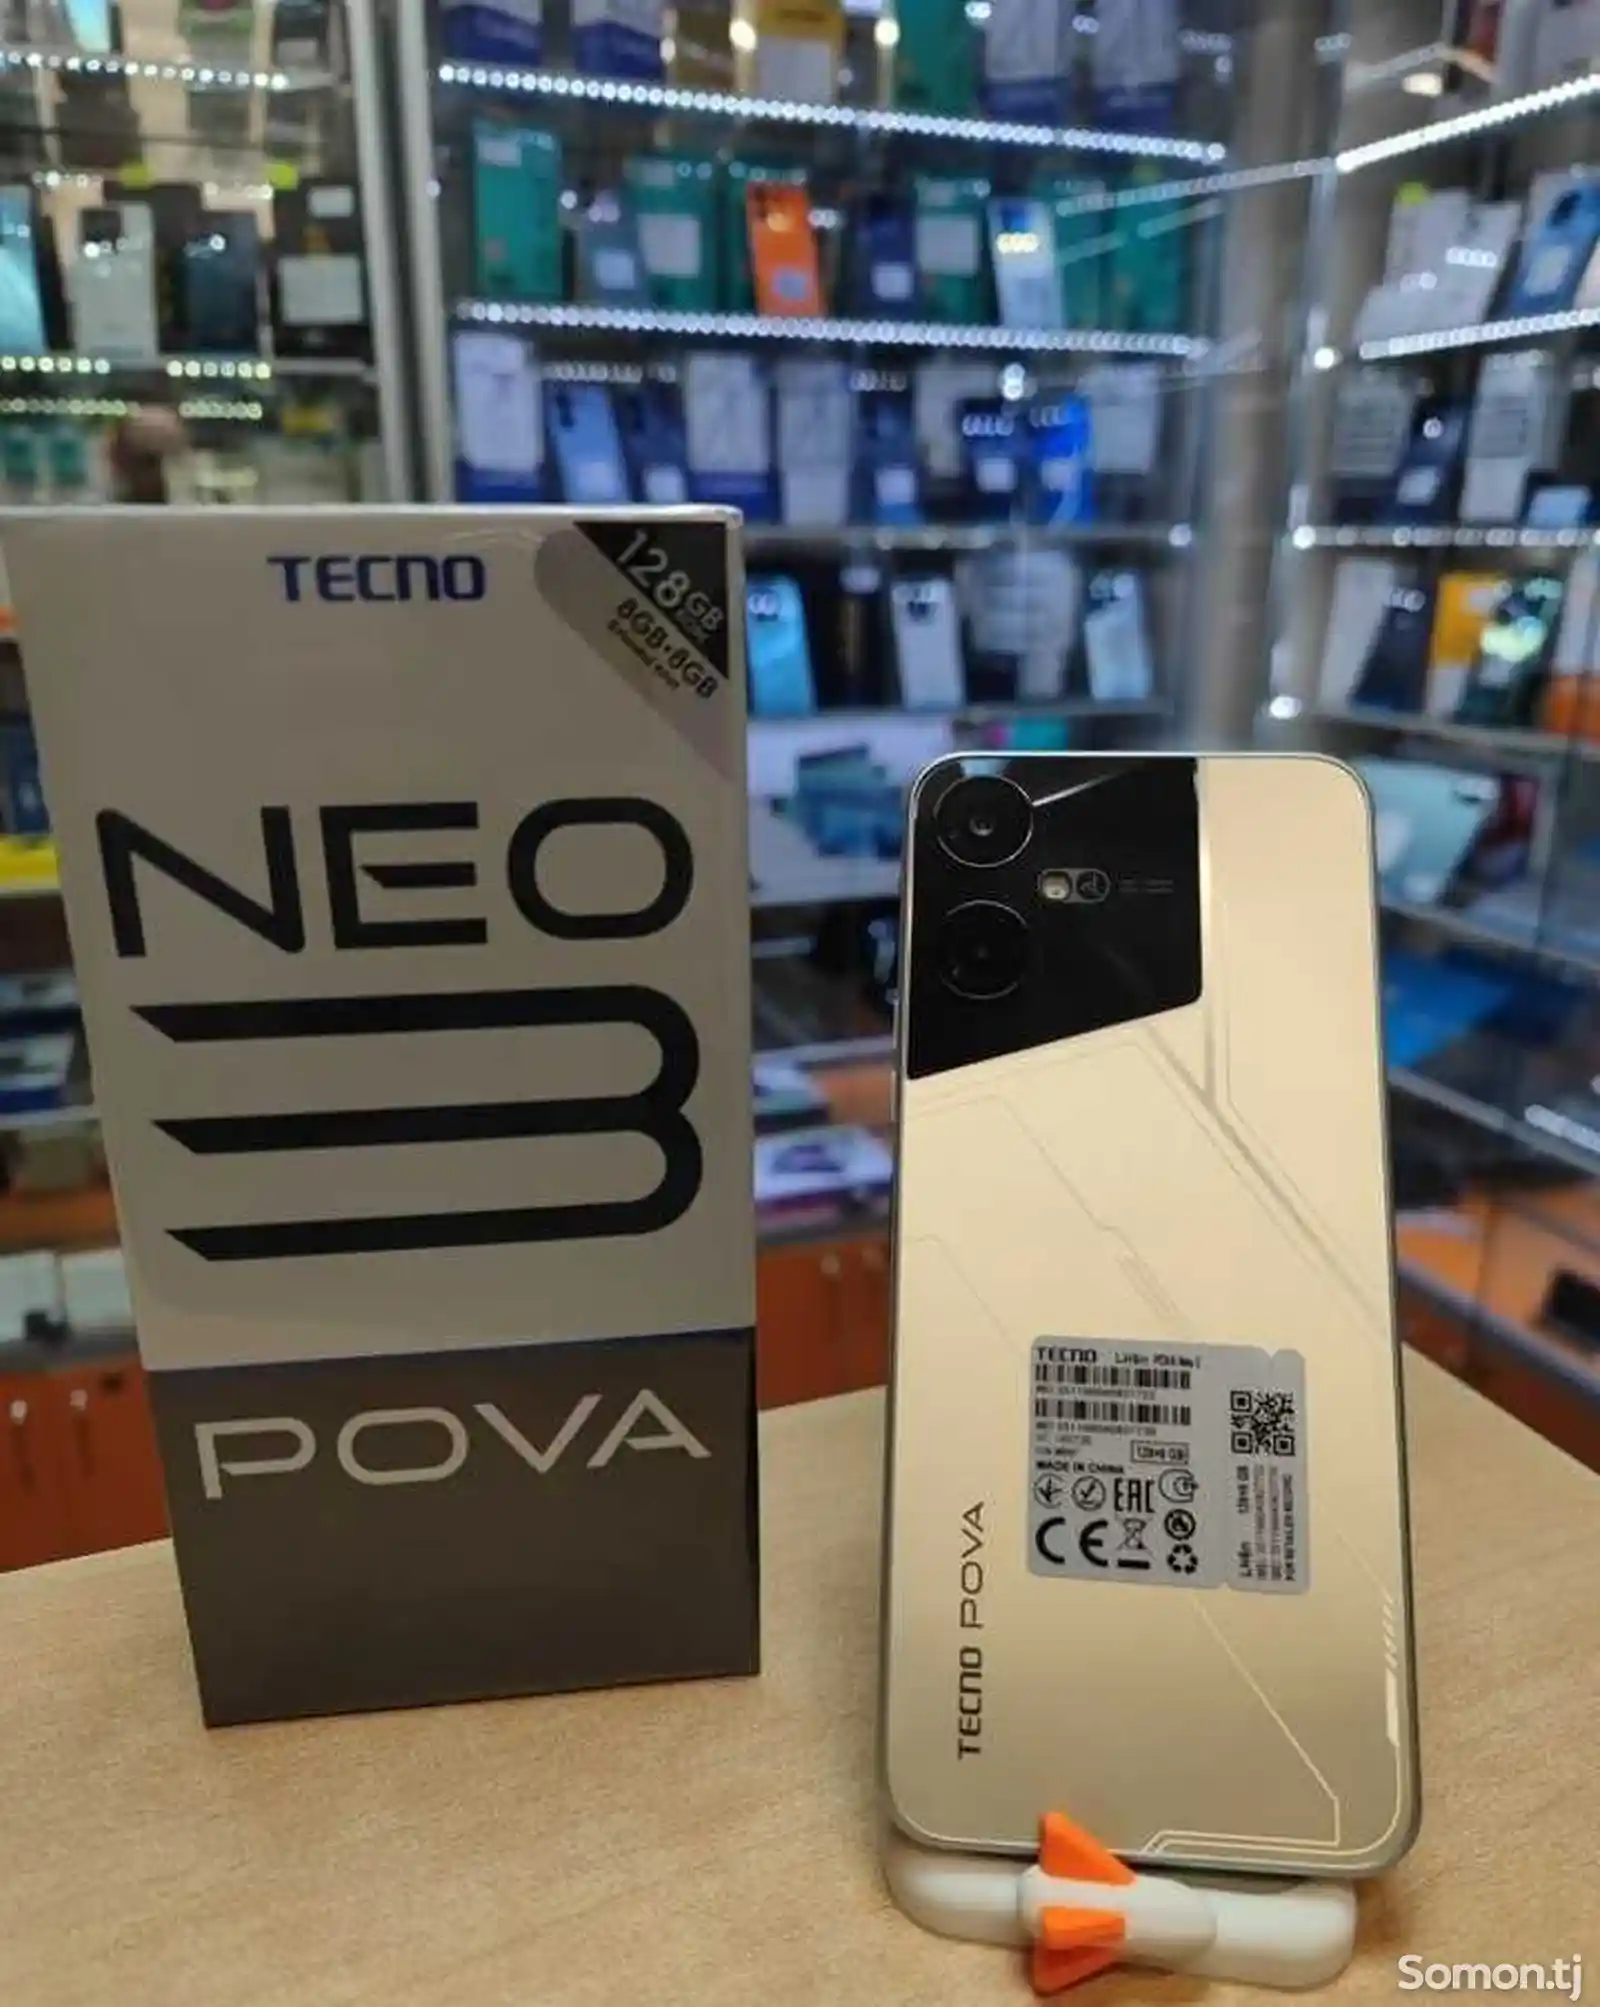 Tecnо Pova Neo 3 8/128gb 7000mah battery-7